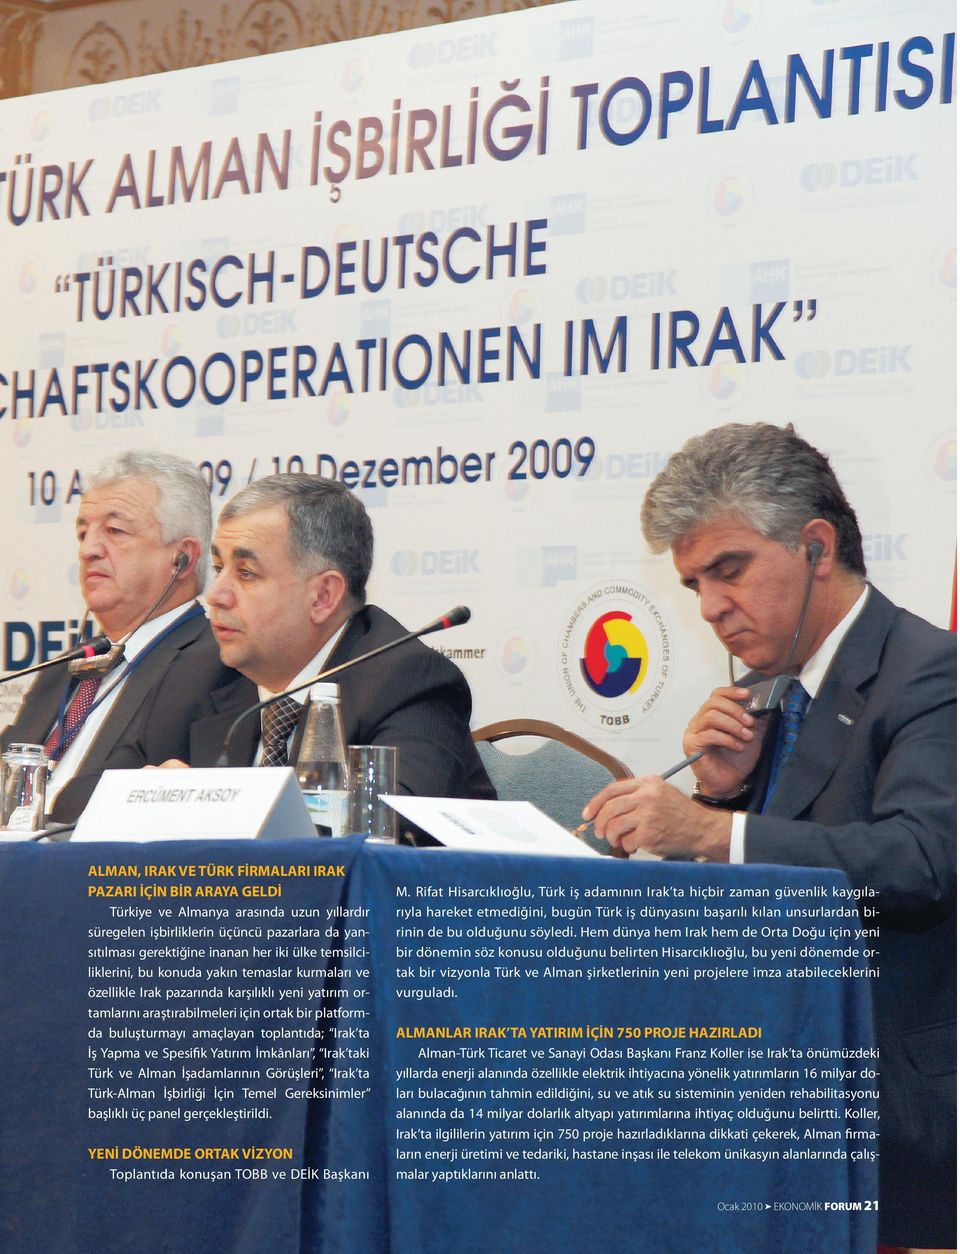 Irak ta İş Yapma ve Spesiﬁk Yatırım İmkânları, Irak taki Türk ve Alman İşadamlarının Görüşleri, Irak ta Türk-Alman İşbirliği İçin Temel Gereksinimler başlıklı üç panel gerçekleştirildi.